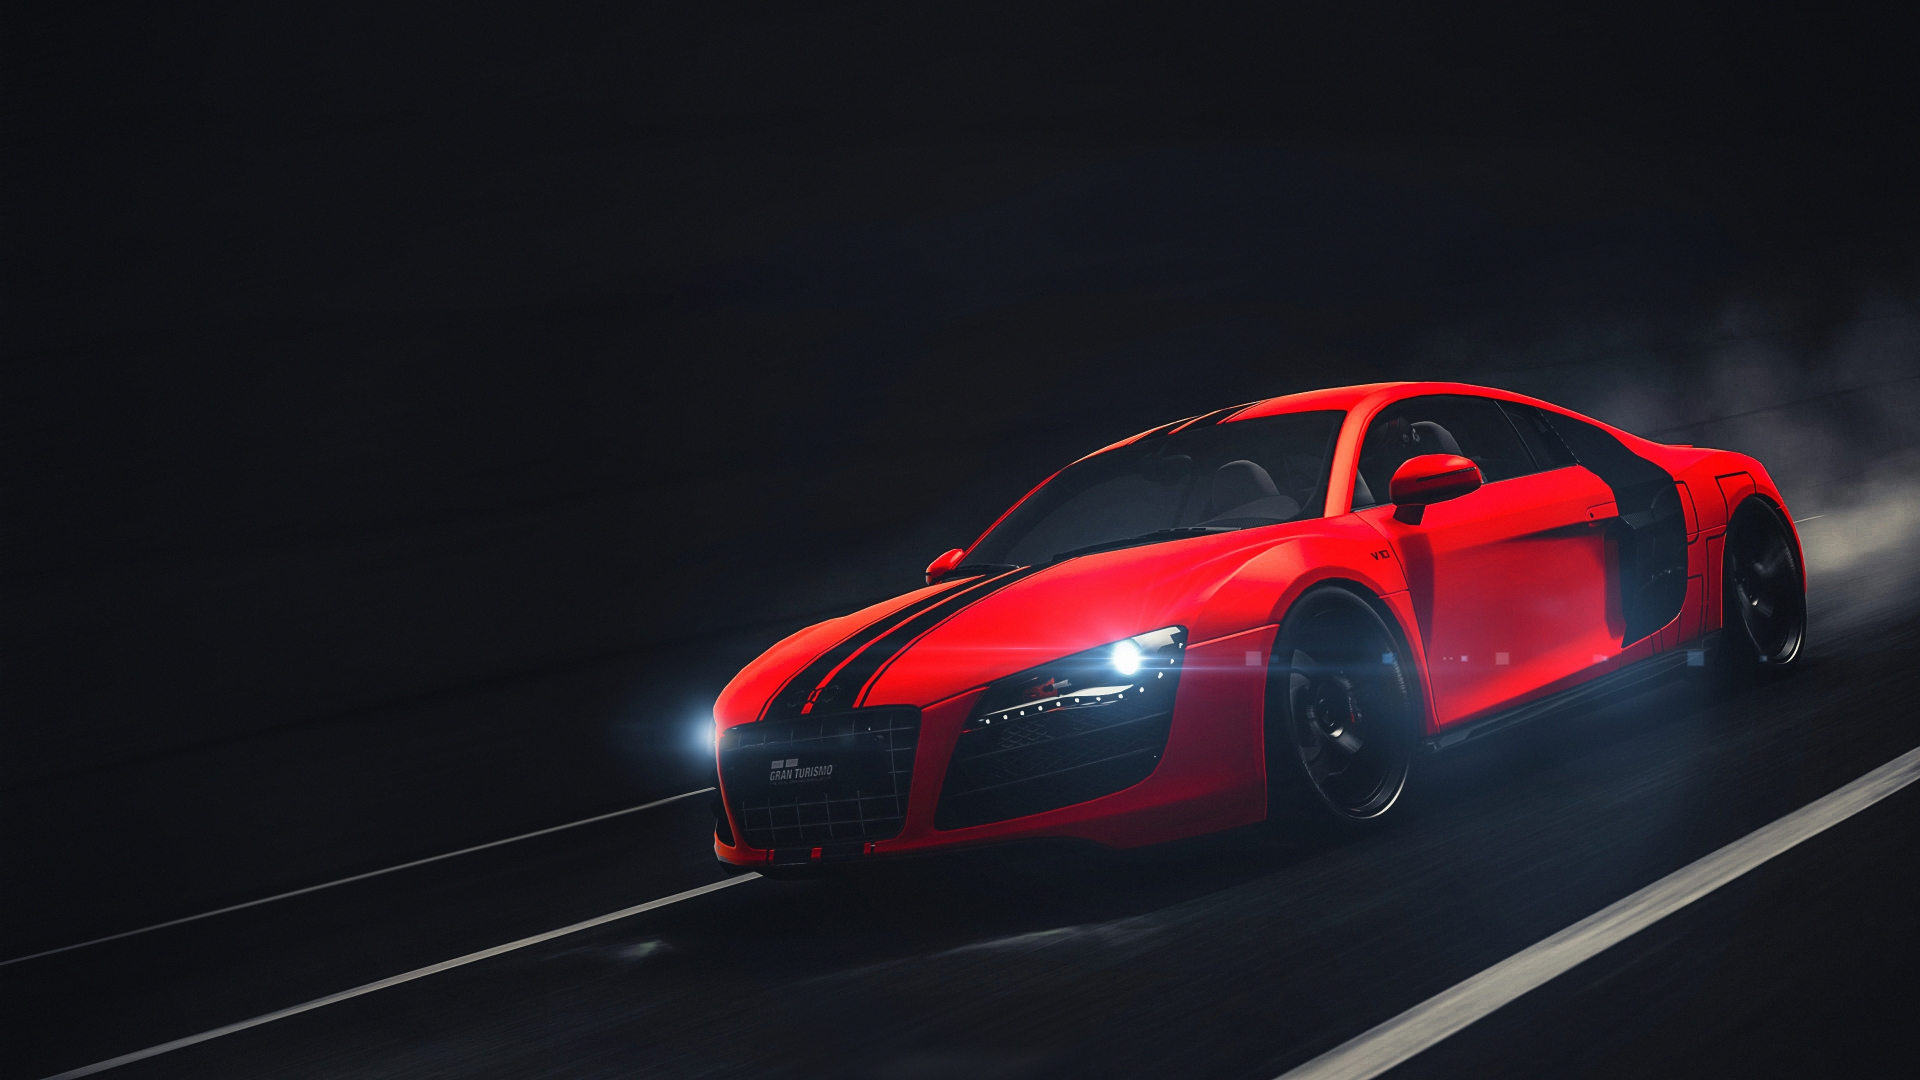 Audi R8 Hd Wallpapers 1080p Download